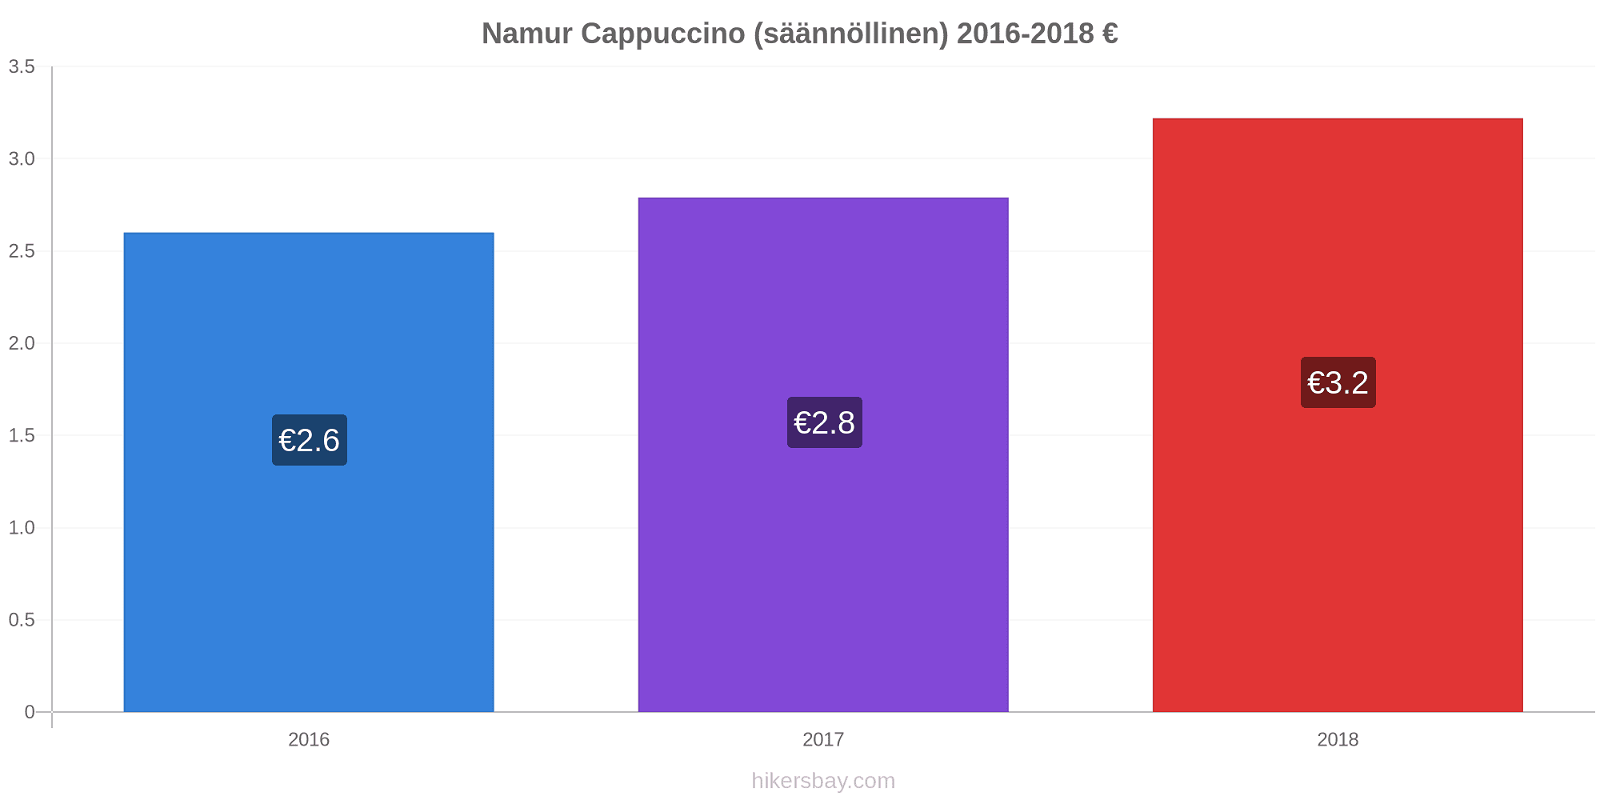 Namur hintojen muutokset Cappuccino (säännöllinen) hikersbay.com